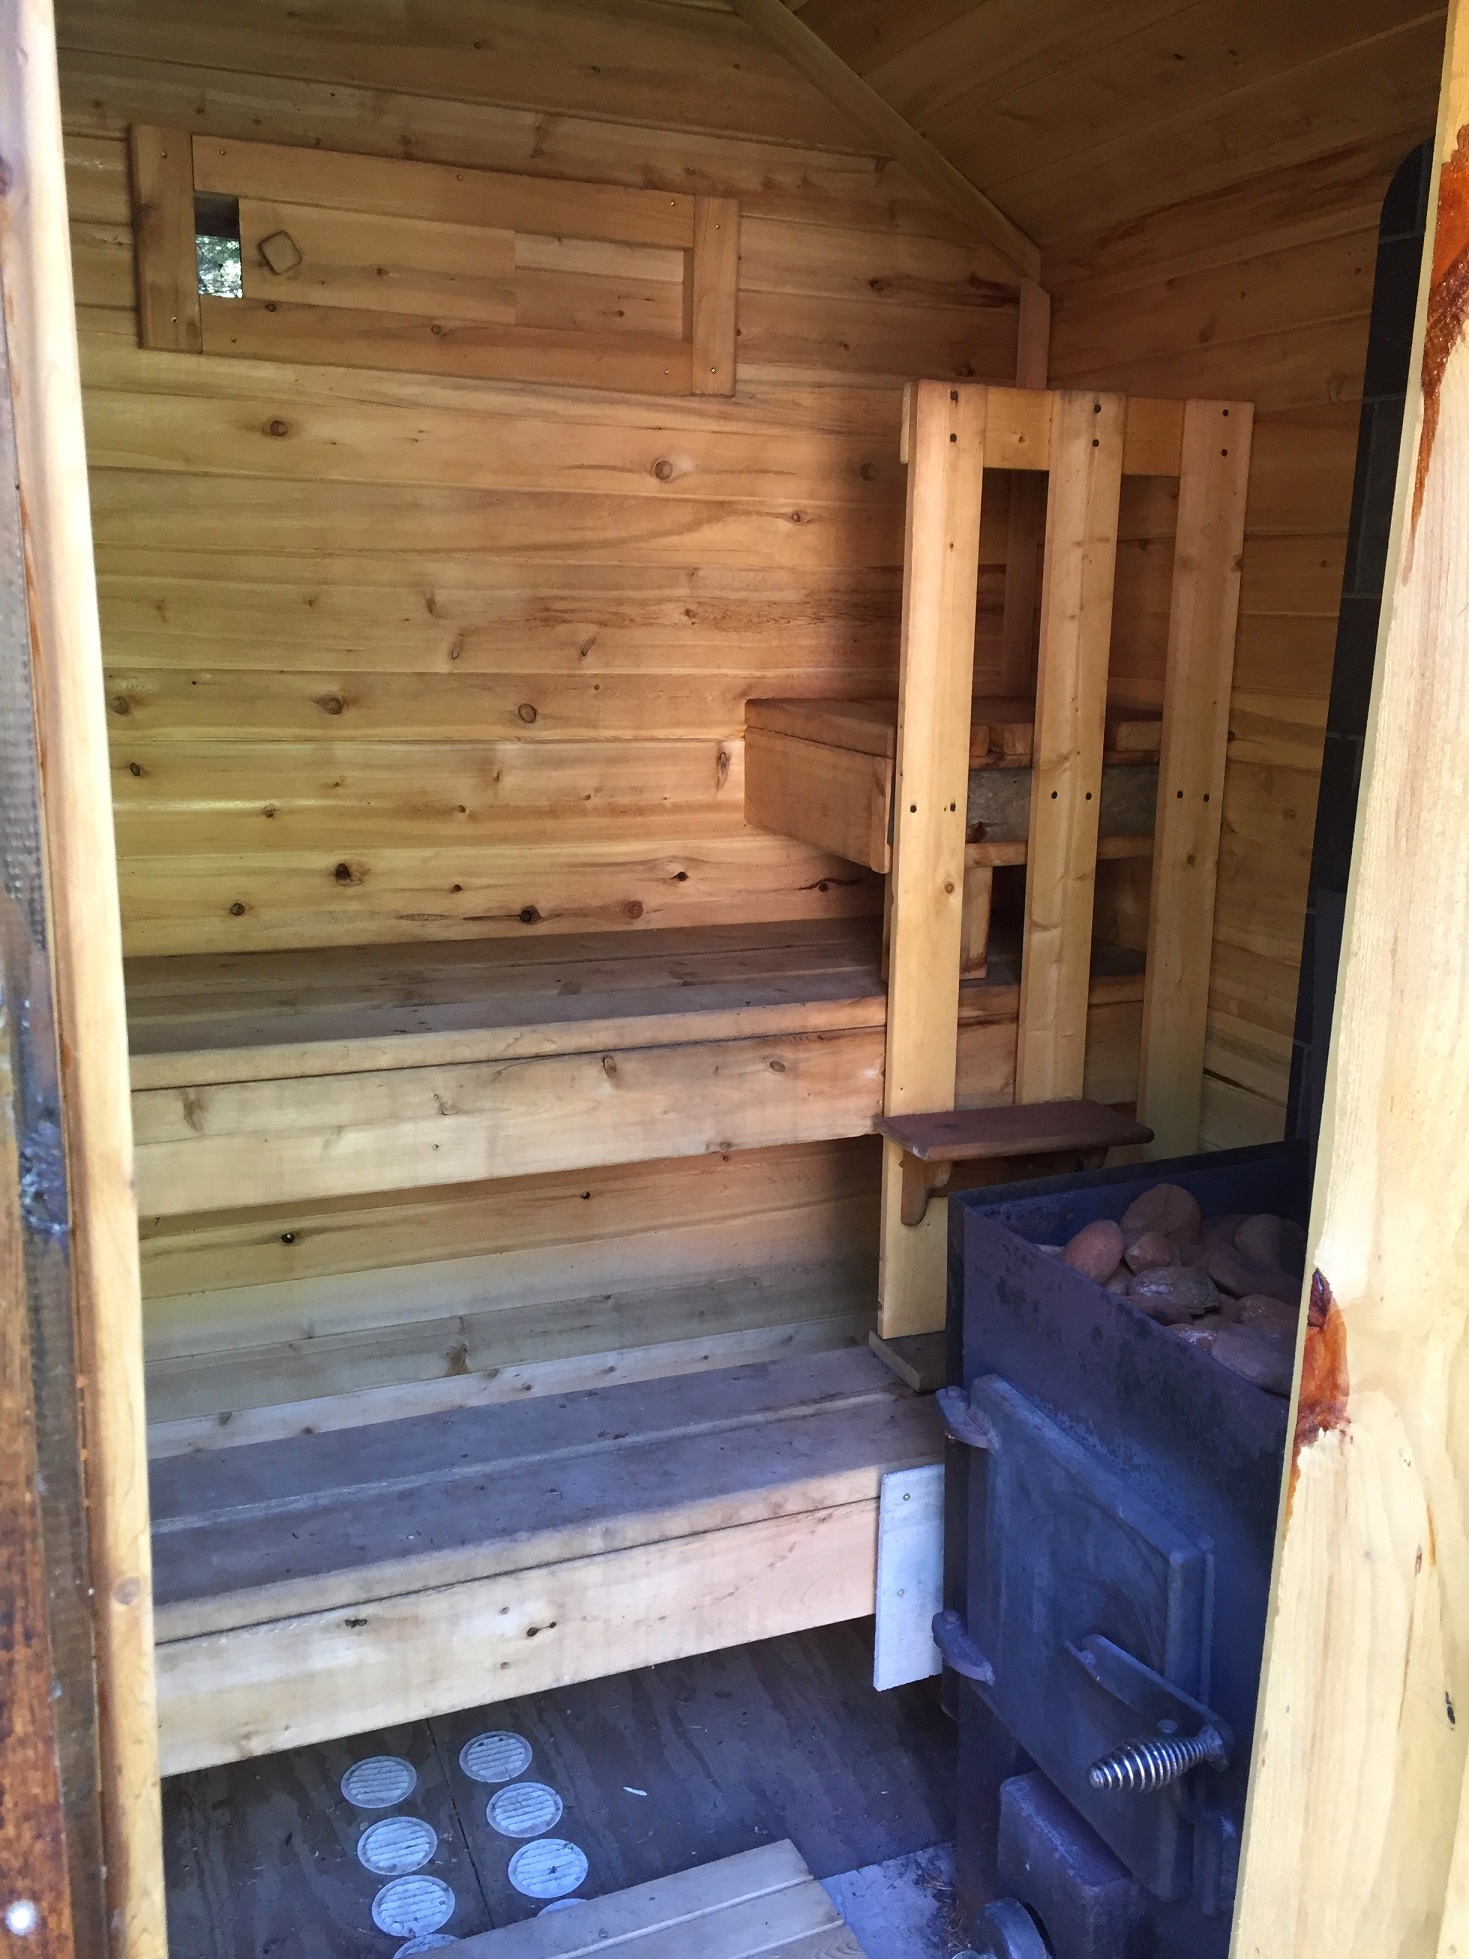 Sauna 1